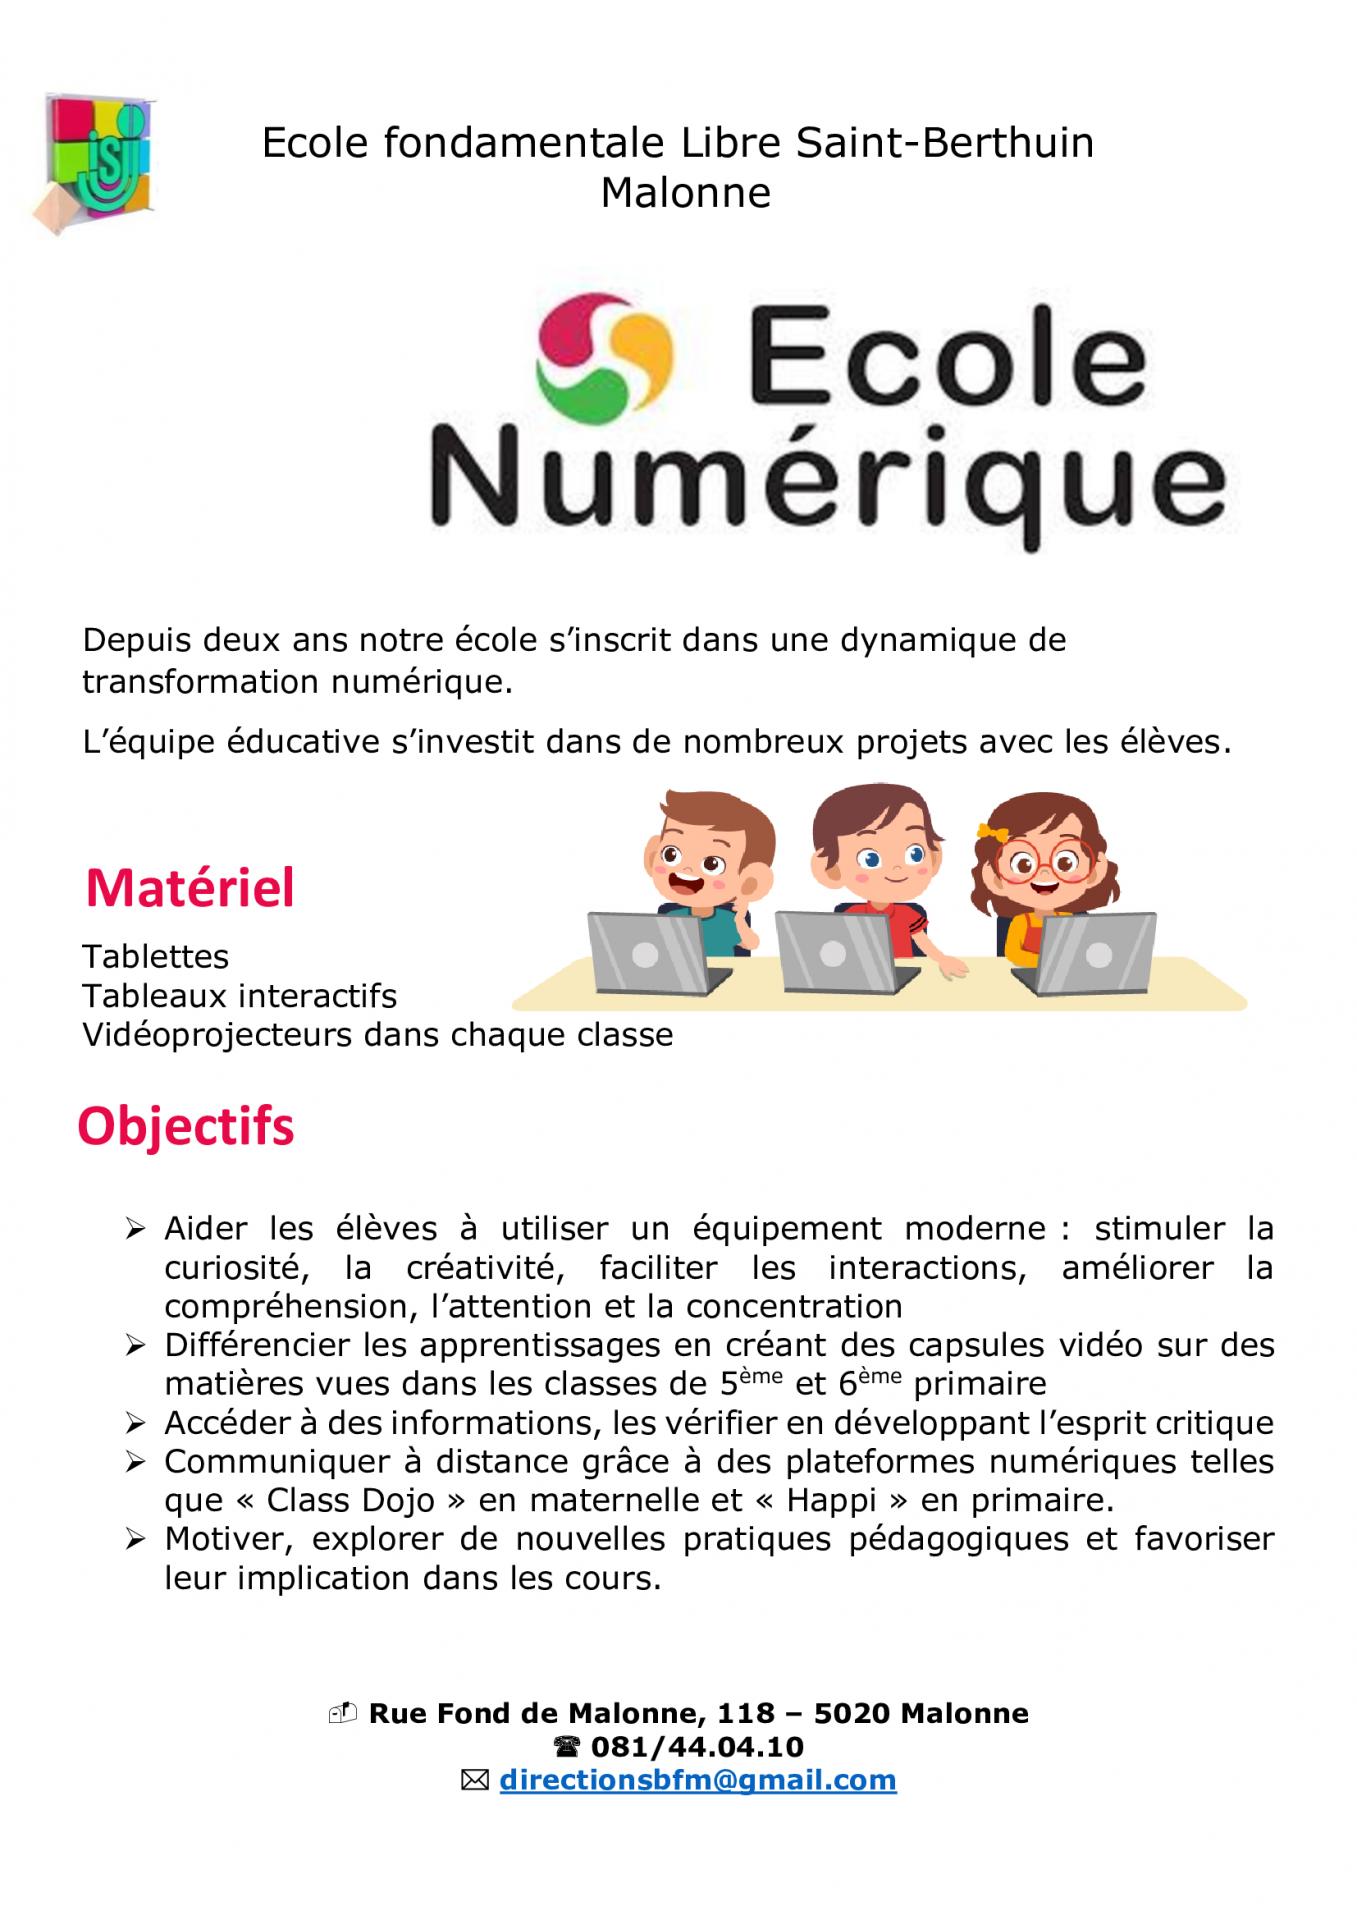 Ecole numerique